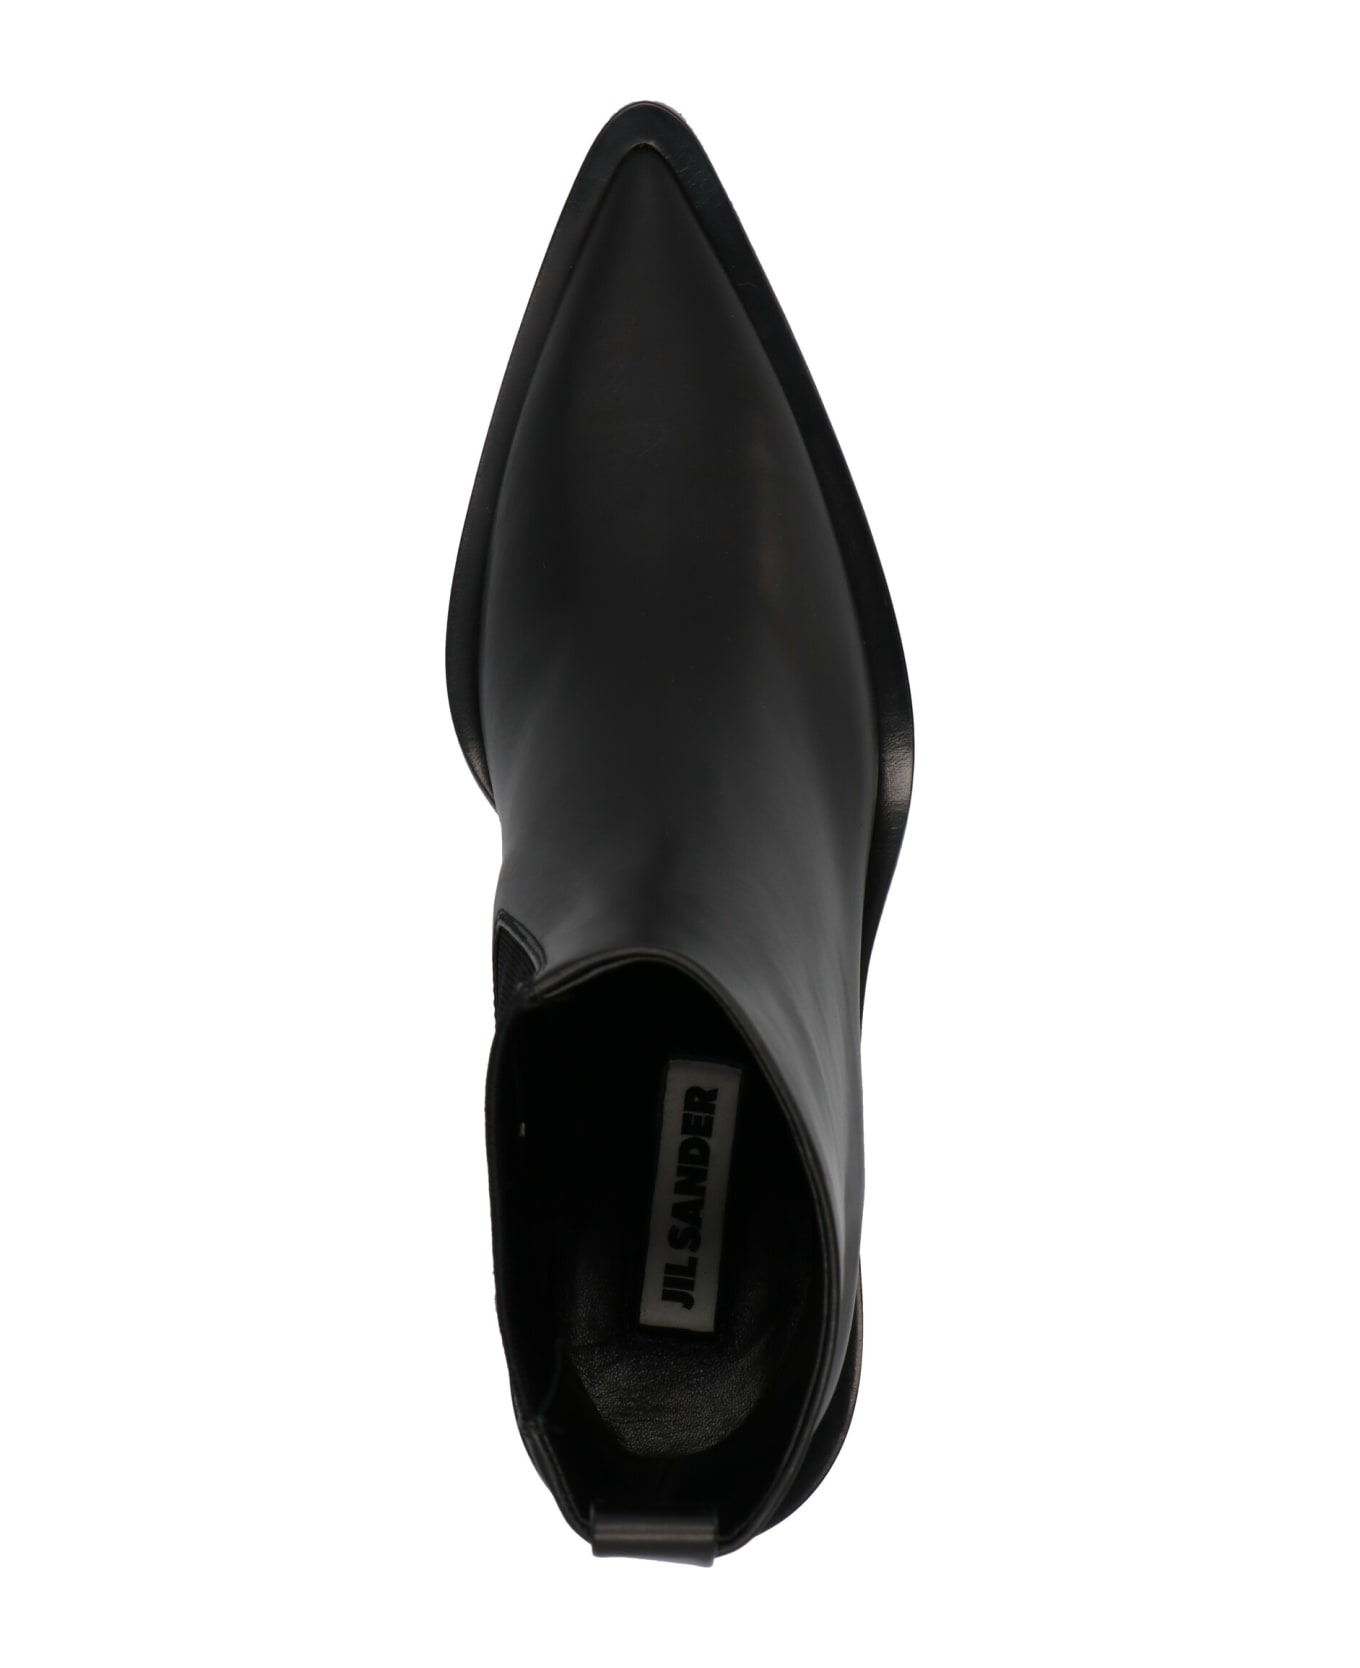 Jil Sander Leather Ankle Boots - Black  